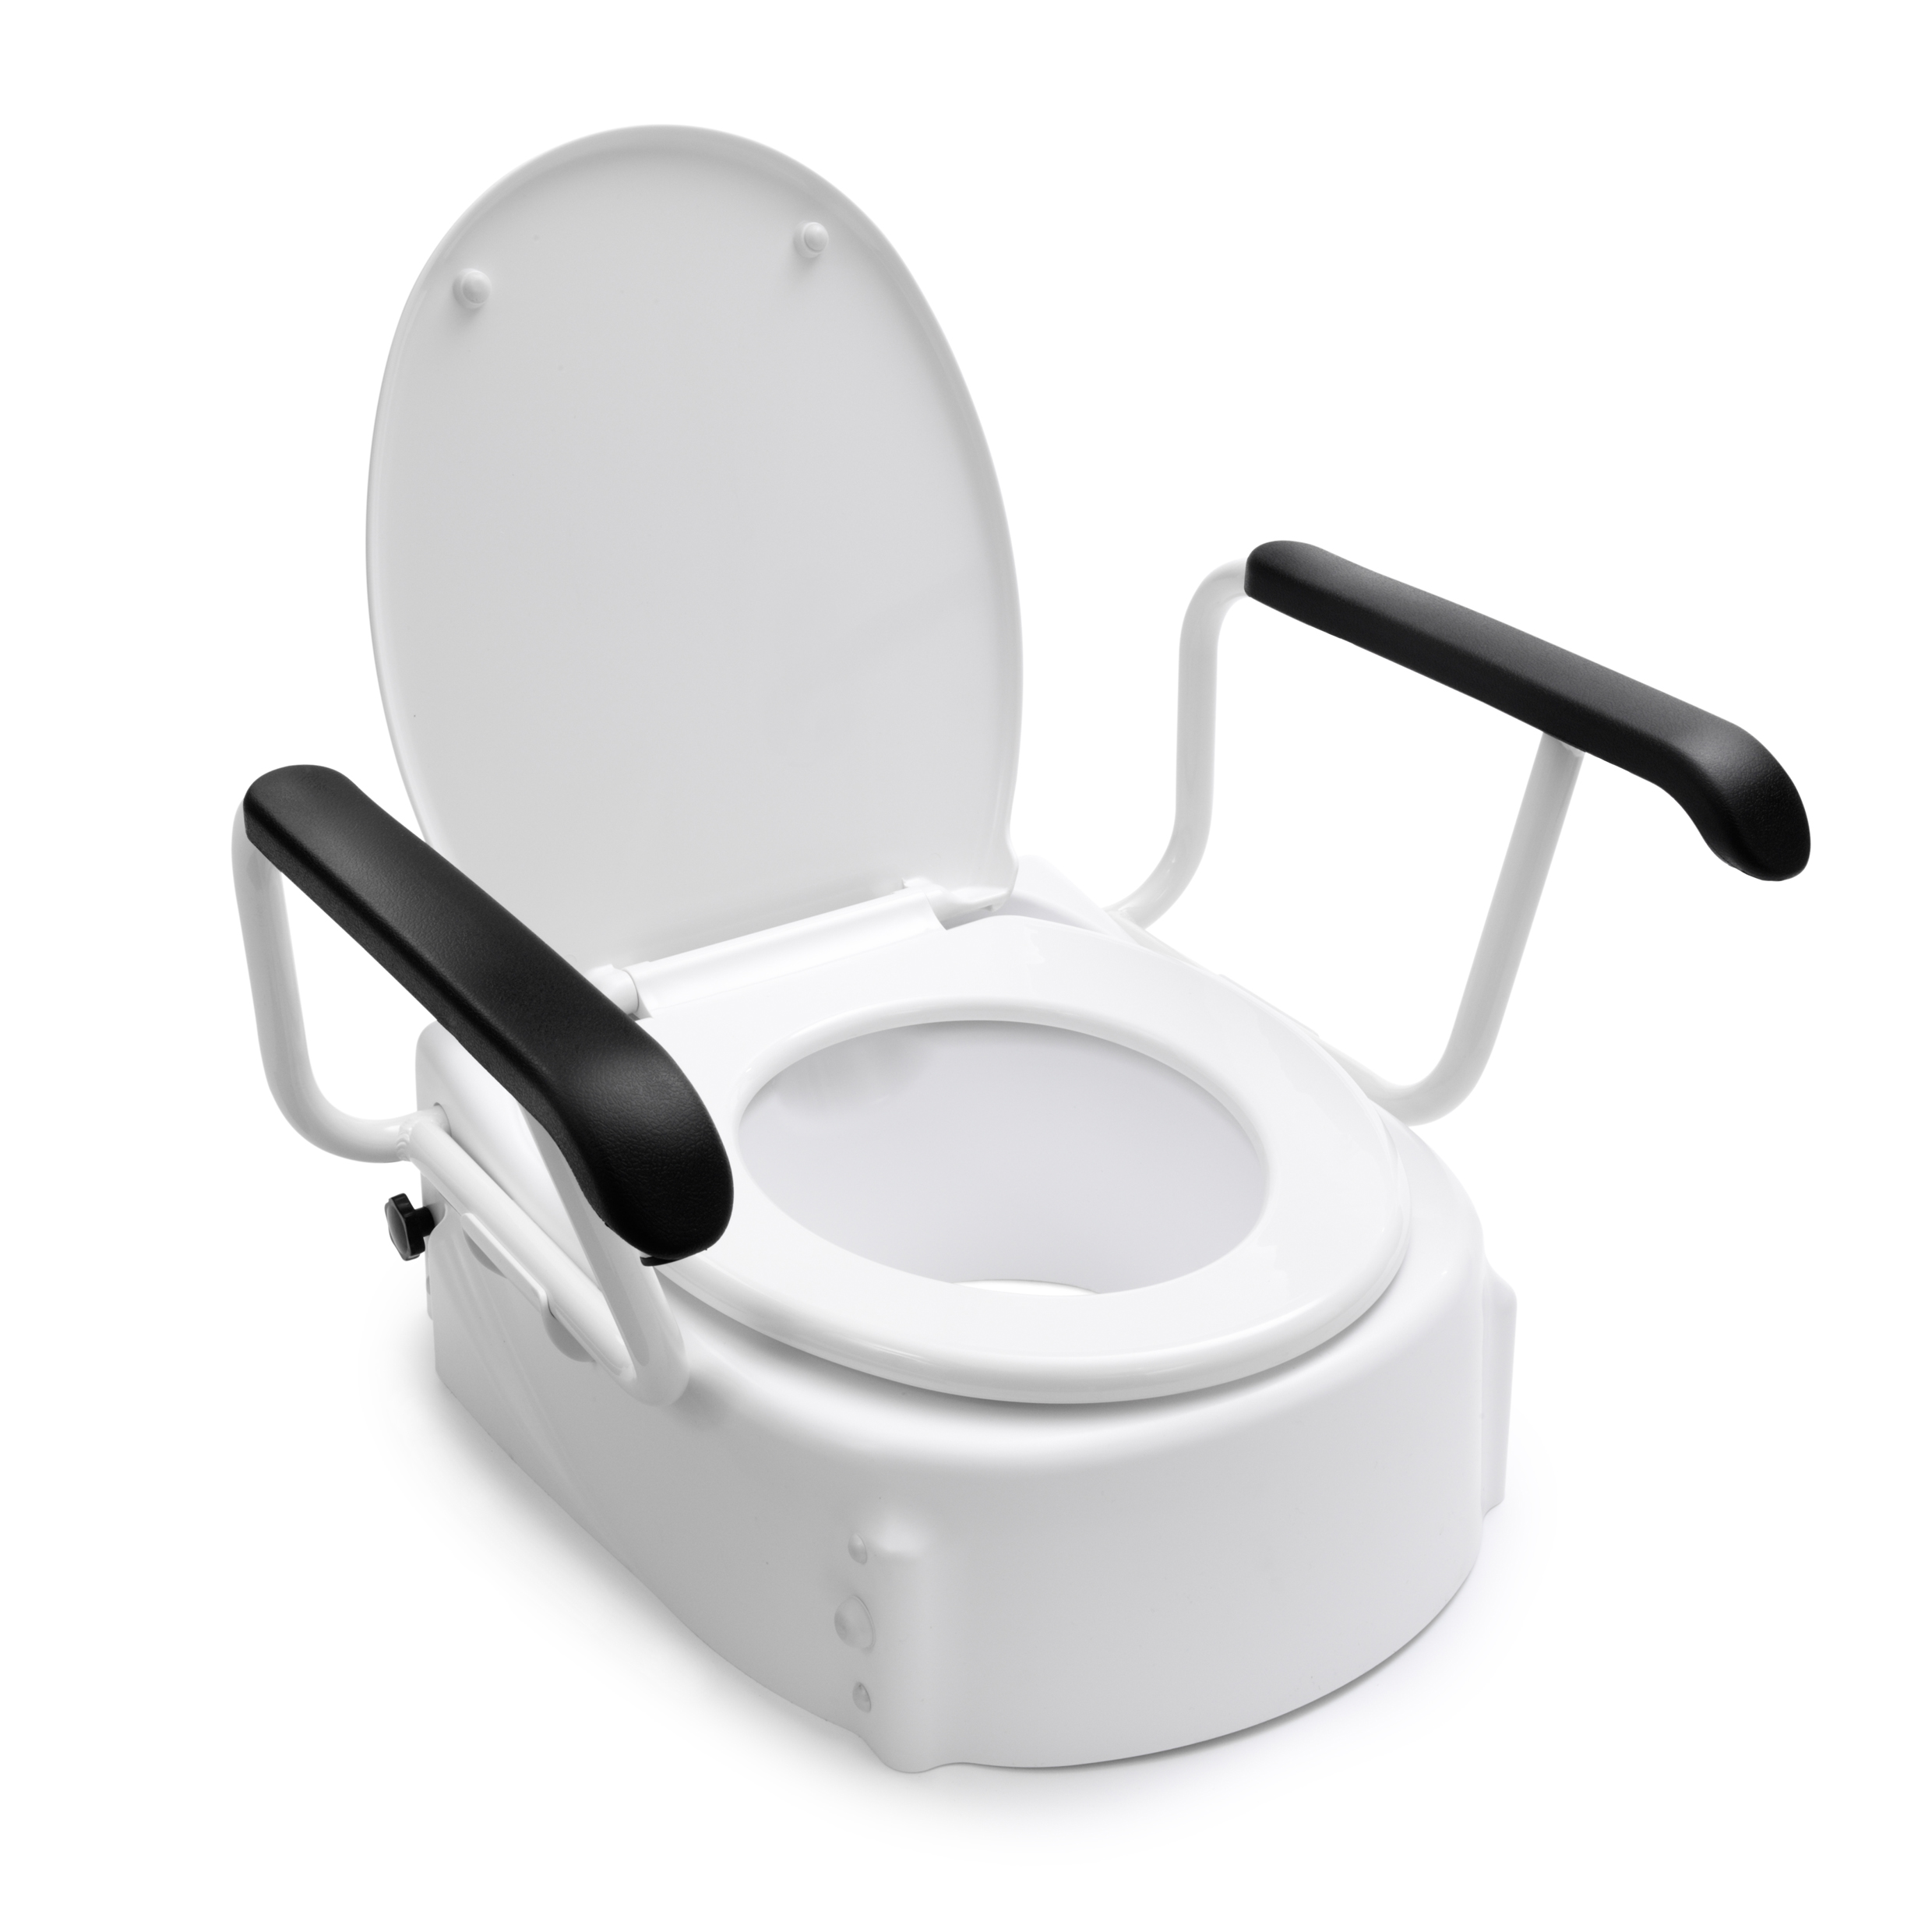 Подставка на унитаз после операции на тазобедренном. Кресло-туалет модели WC EFIX. WC EFIX кресло-туалет складное. Стульчик на унитаз после операции. Туалет с подлокотниками.